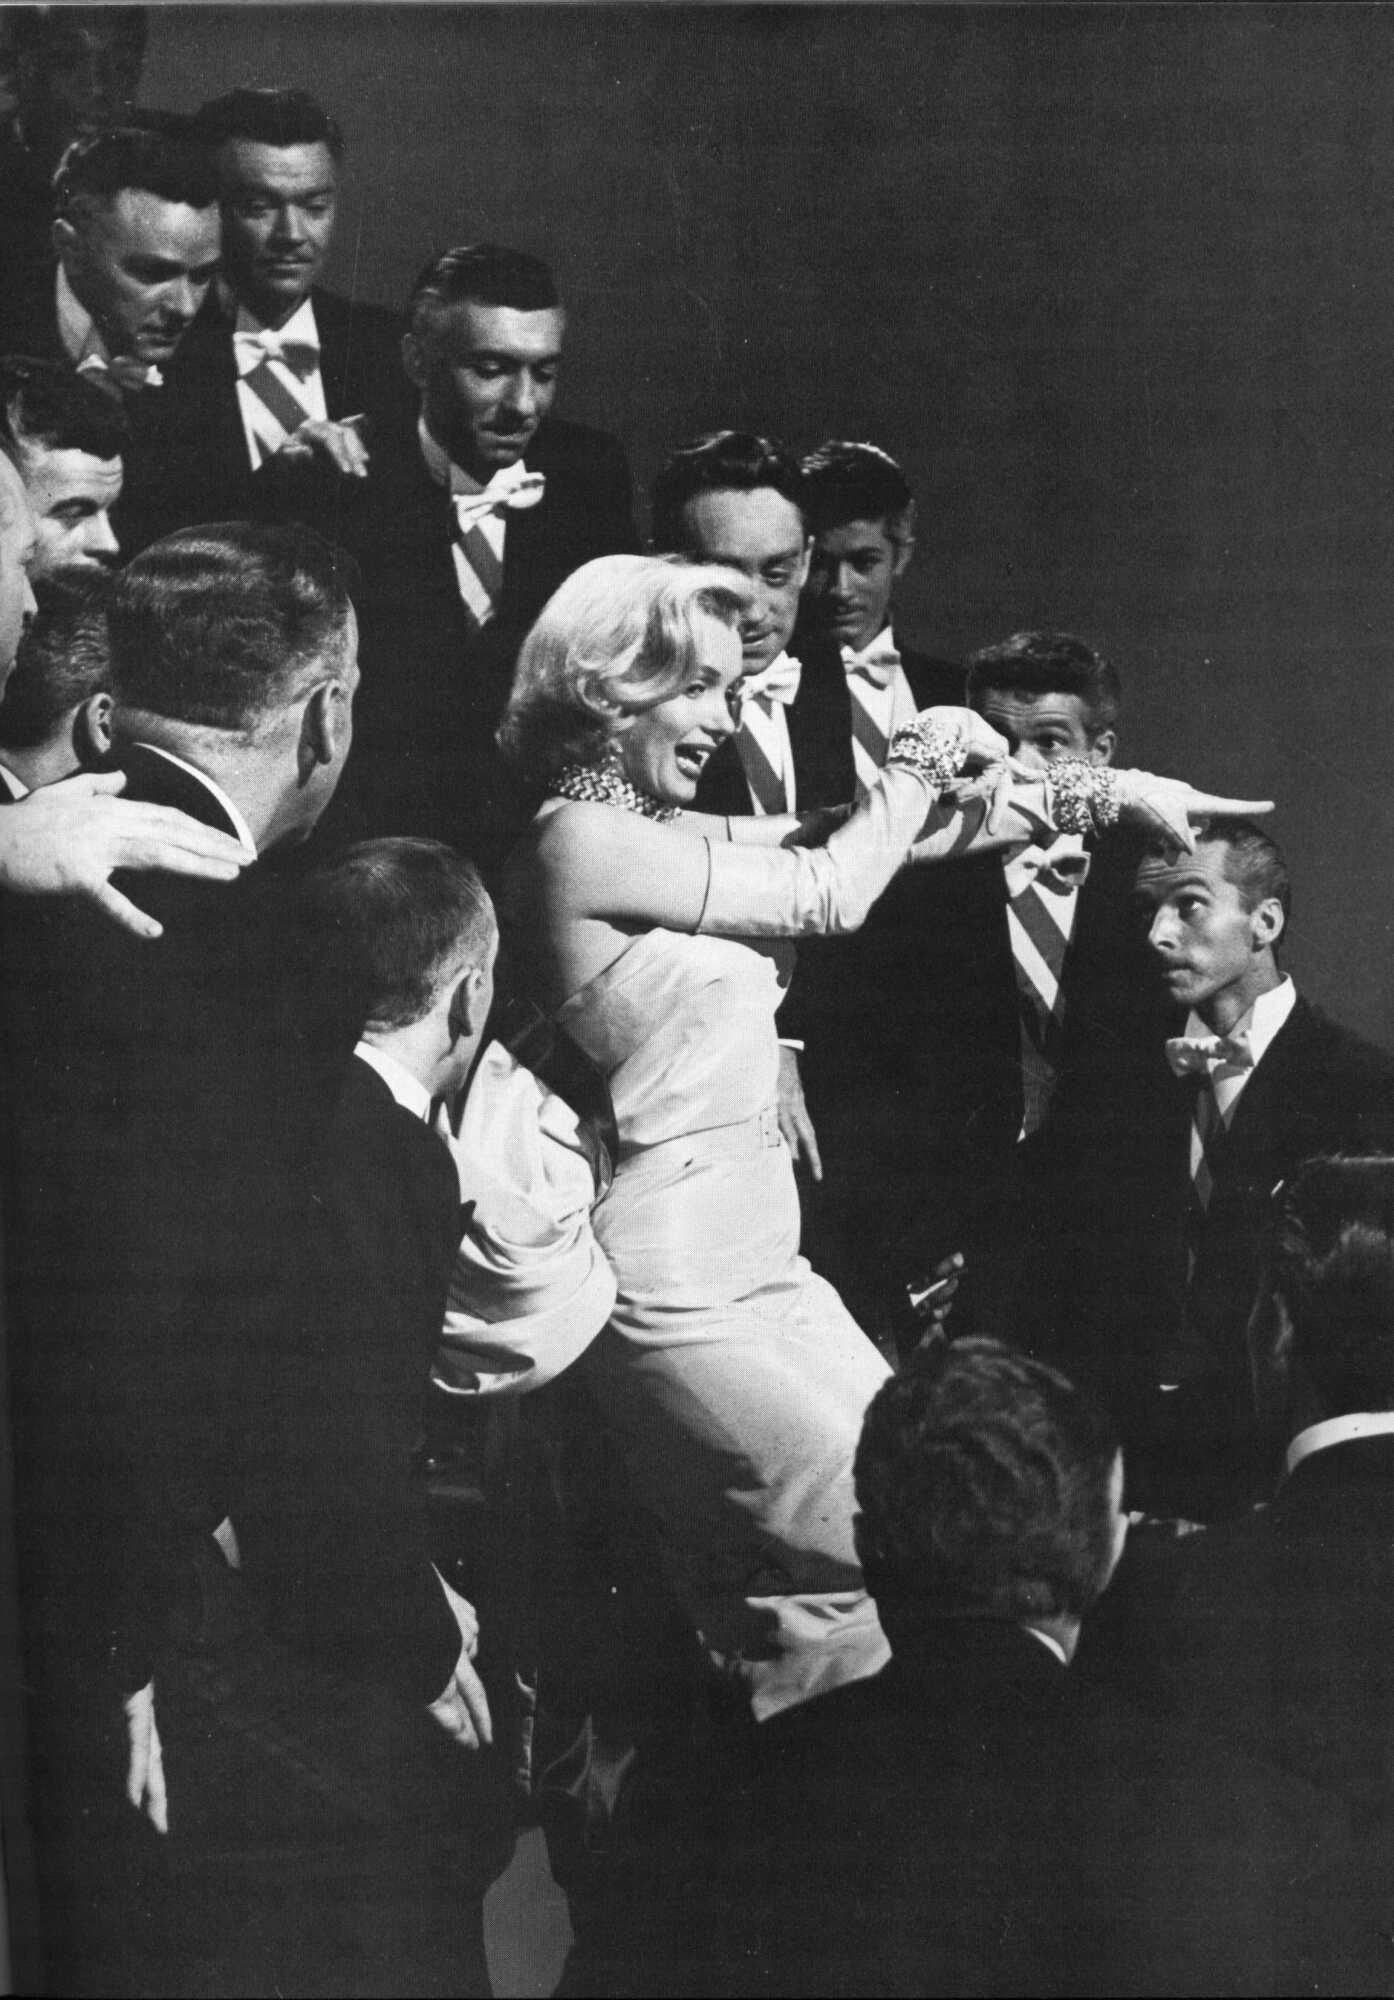 Gentlemen Prefer Blondes - Marilyn Monroe Photo (14457742) - Fanpop1394 x 2000